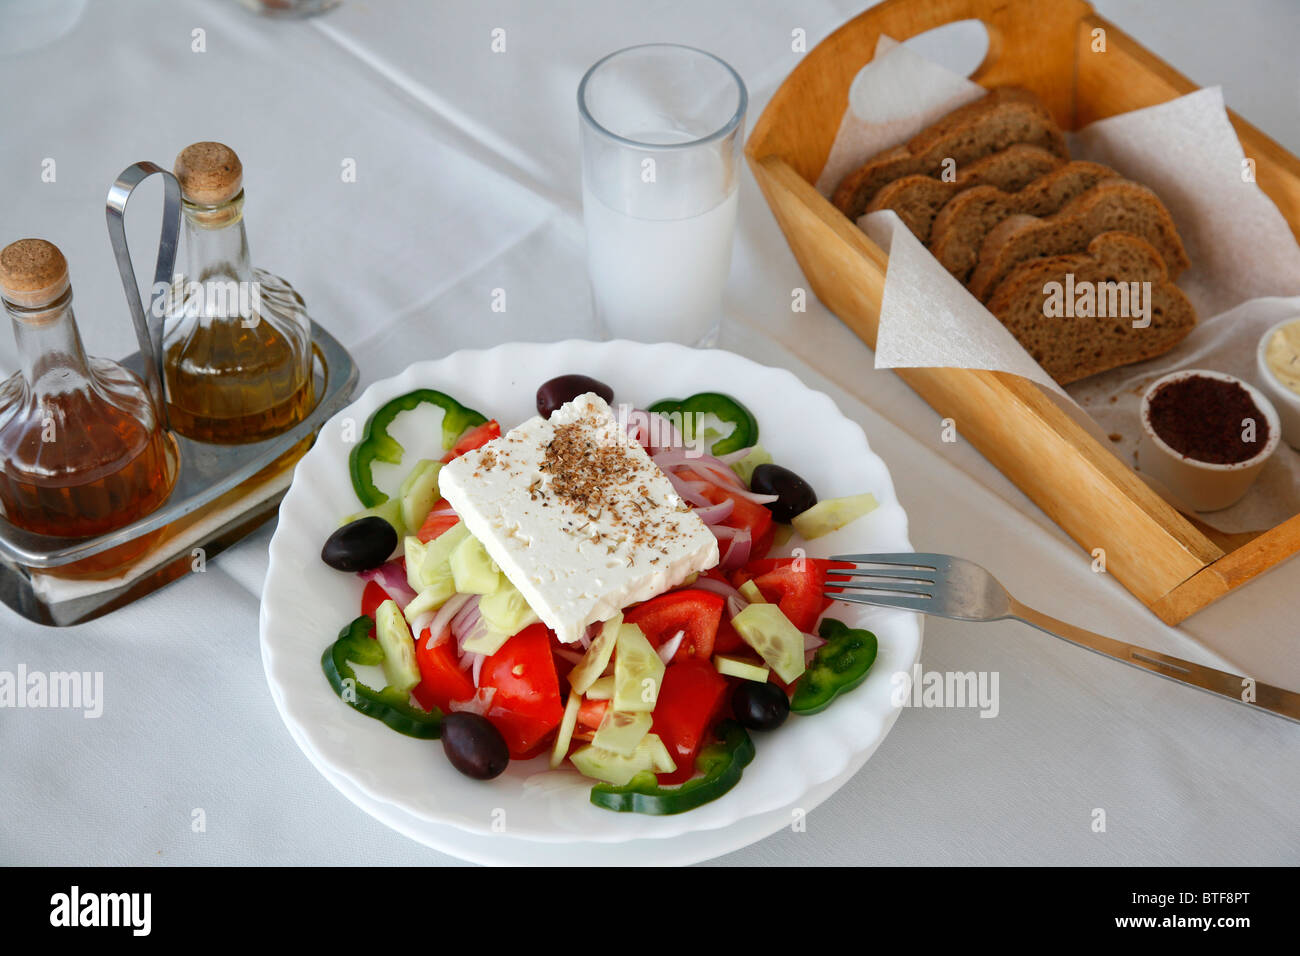 Griechischer Salat und einem Glas Ouzo, Kalymnos, Griechenland  Stockfotografie - Alamy